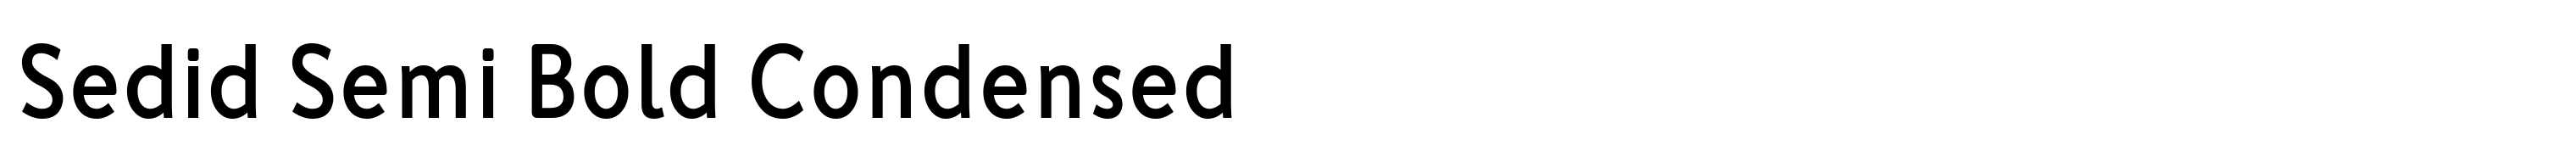 Sedid Semi Bold Condensed